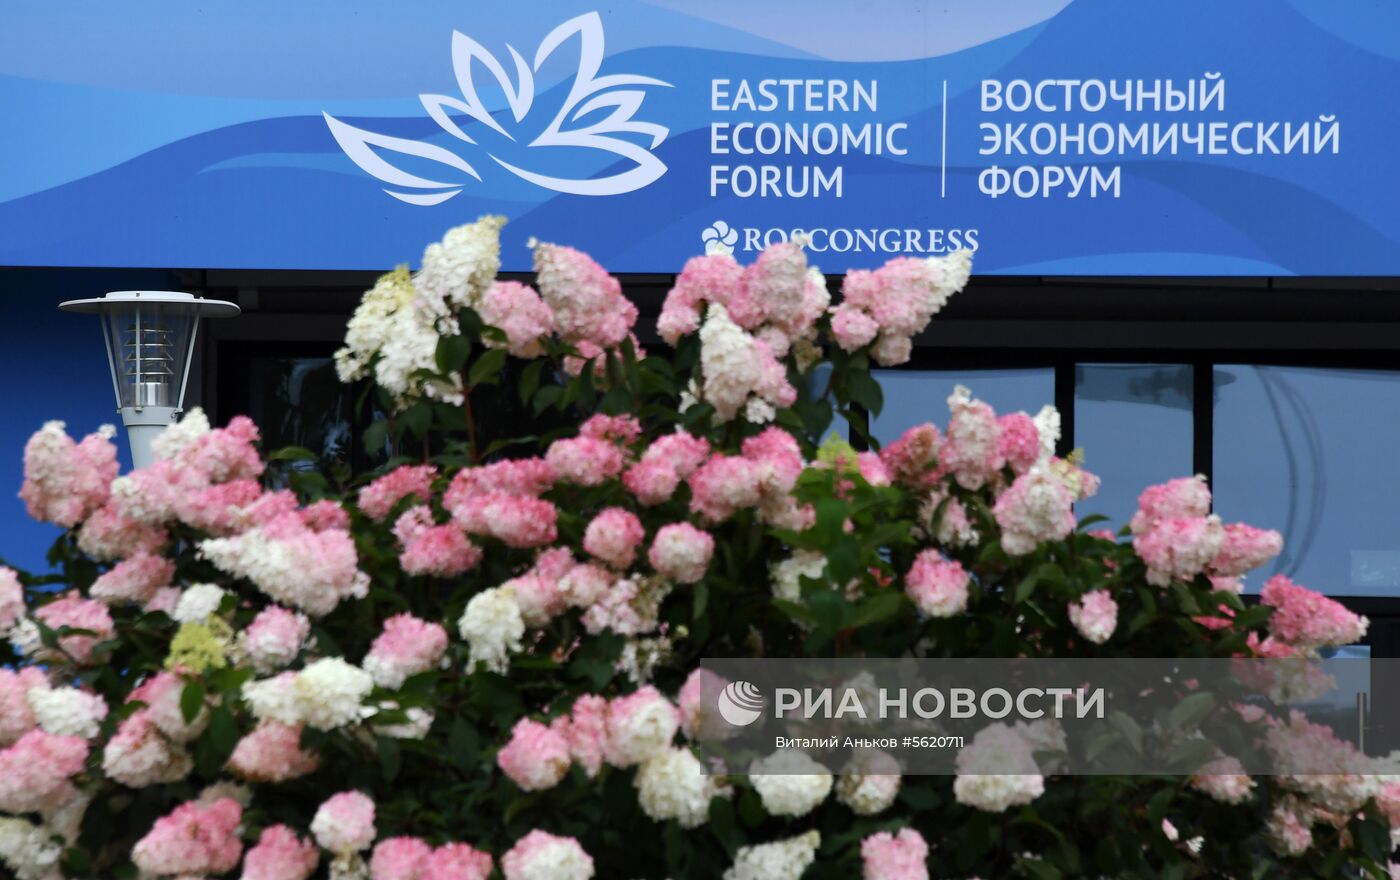 Оформление Владивостока к Восточному экономическому форуму